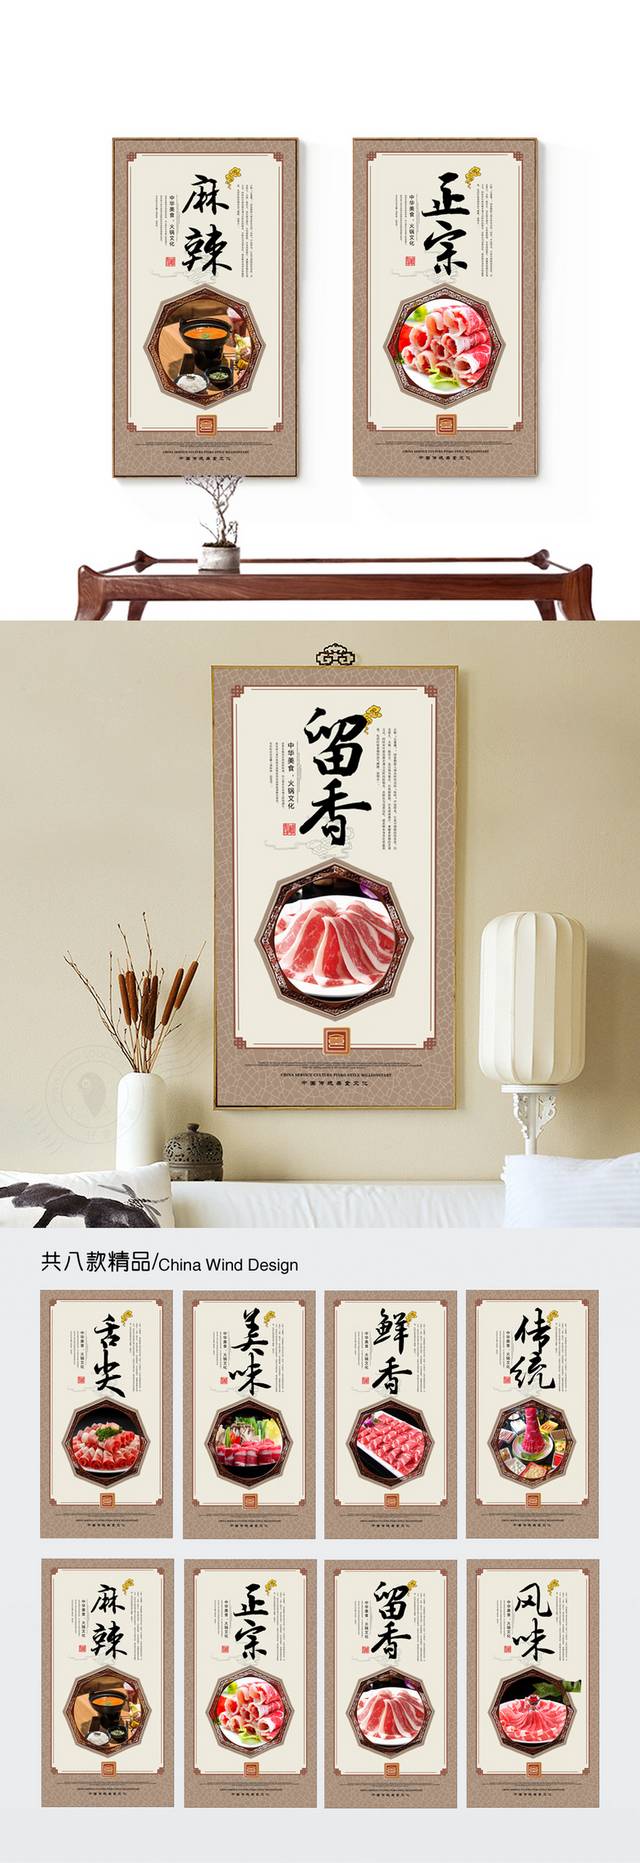 肥牛火锅文化展板海报设计